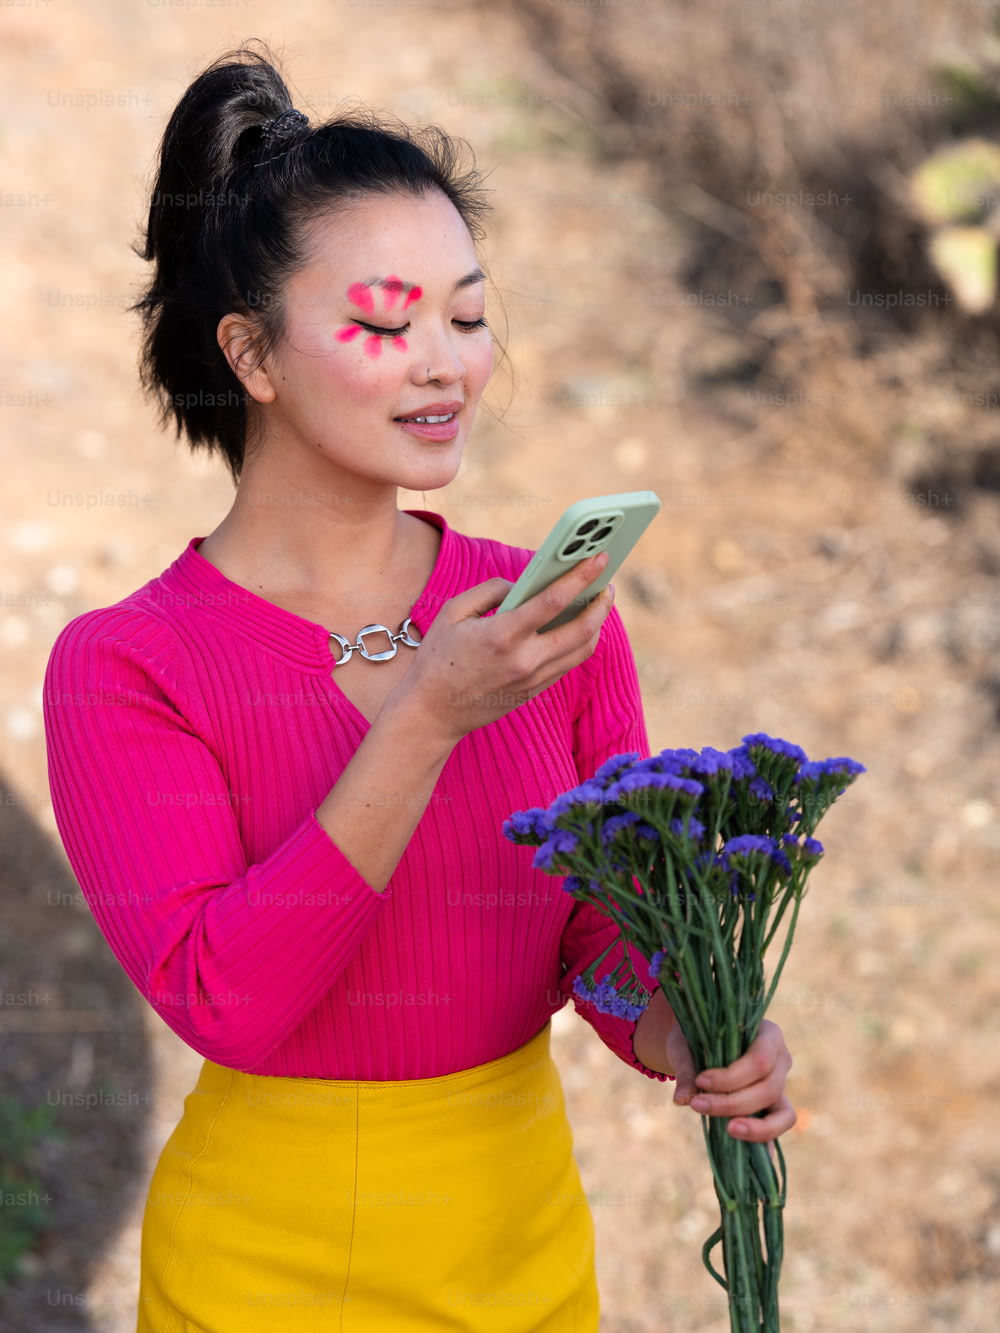 꽃다발과 휴대폰을 들고 있는 여자